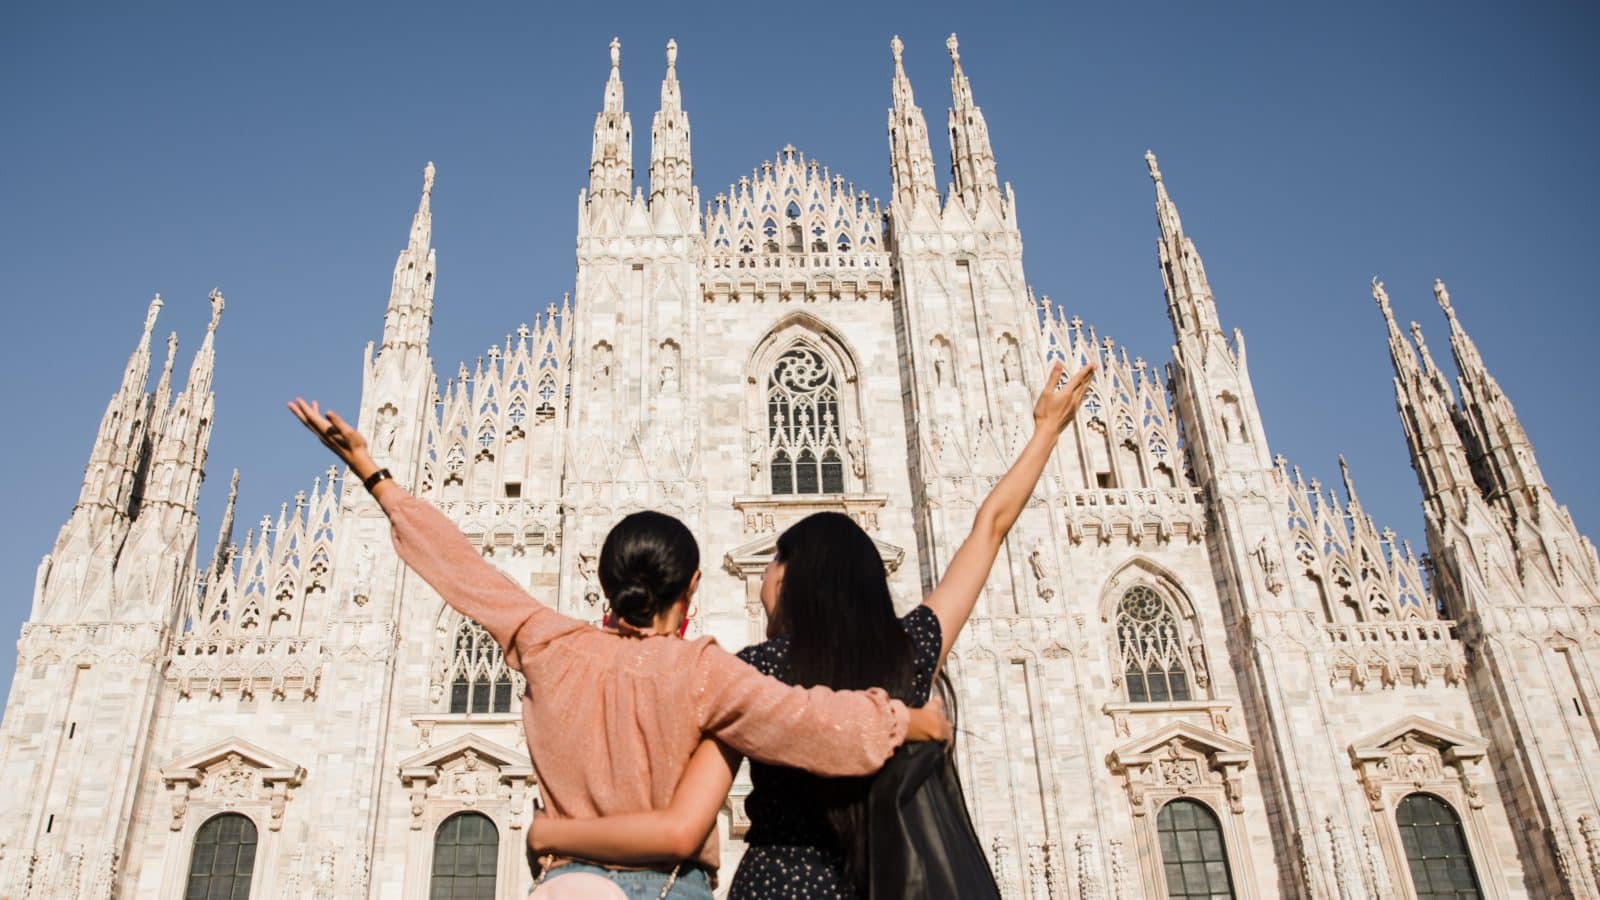 Studenti i nastavnici FMTU-a otišli na studijsko putovanje u Milano